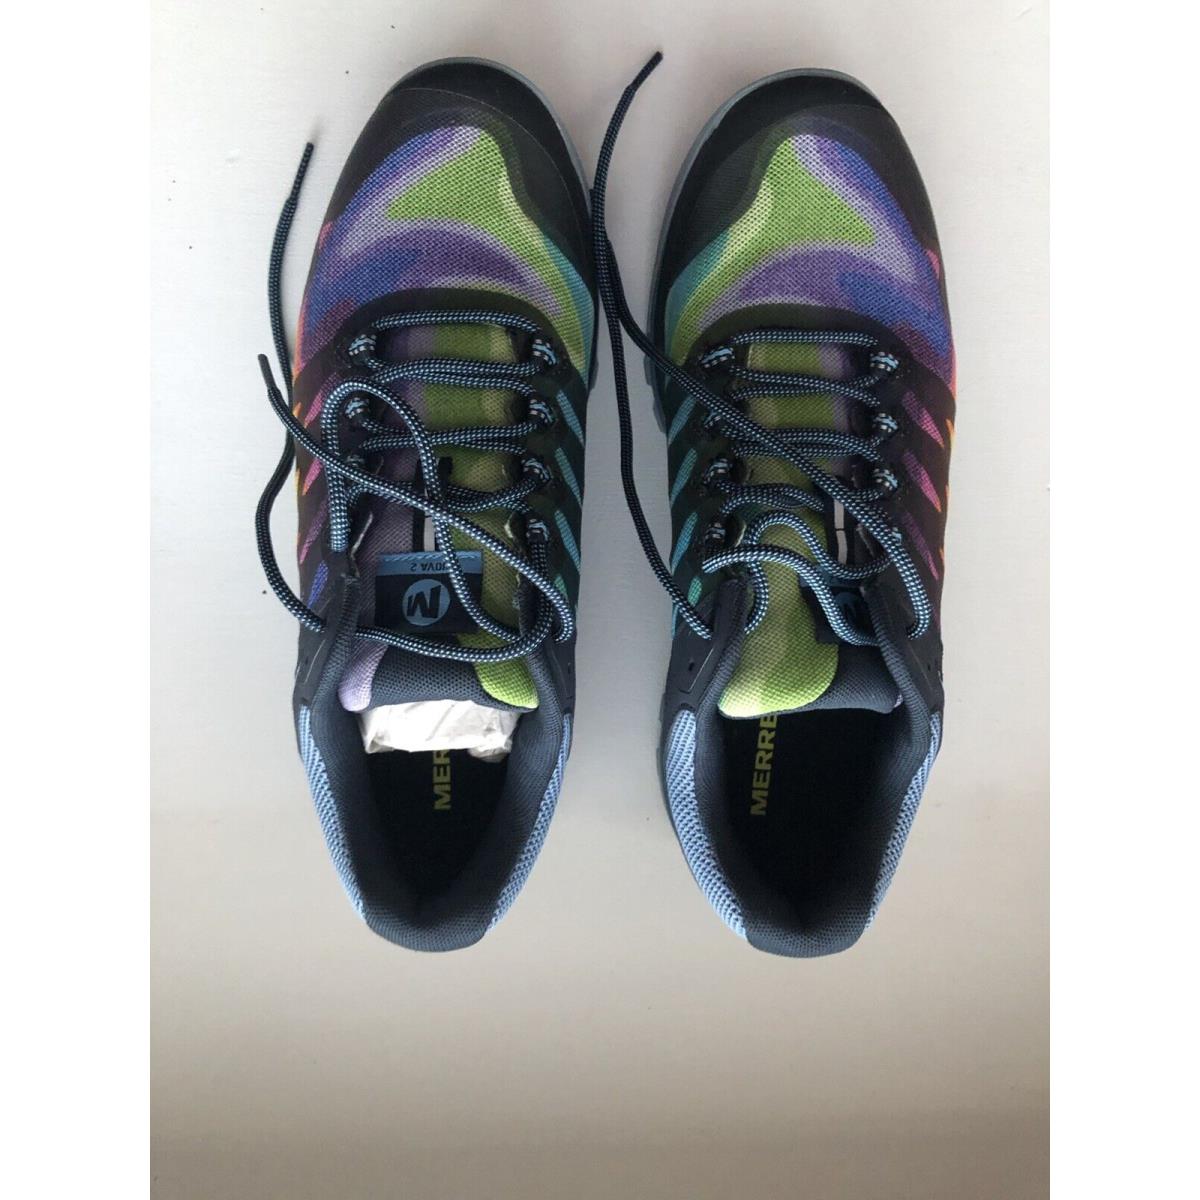 Merrell shoes NOVA - Multicolor 0